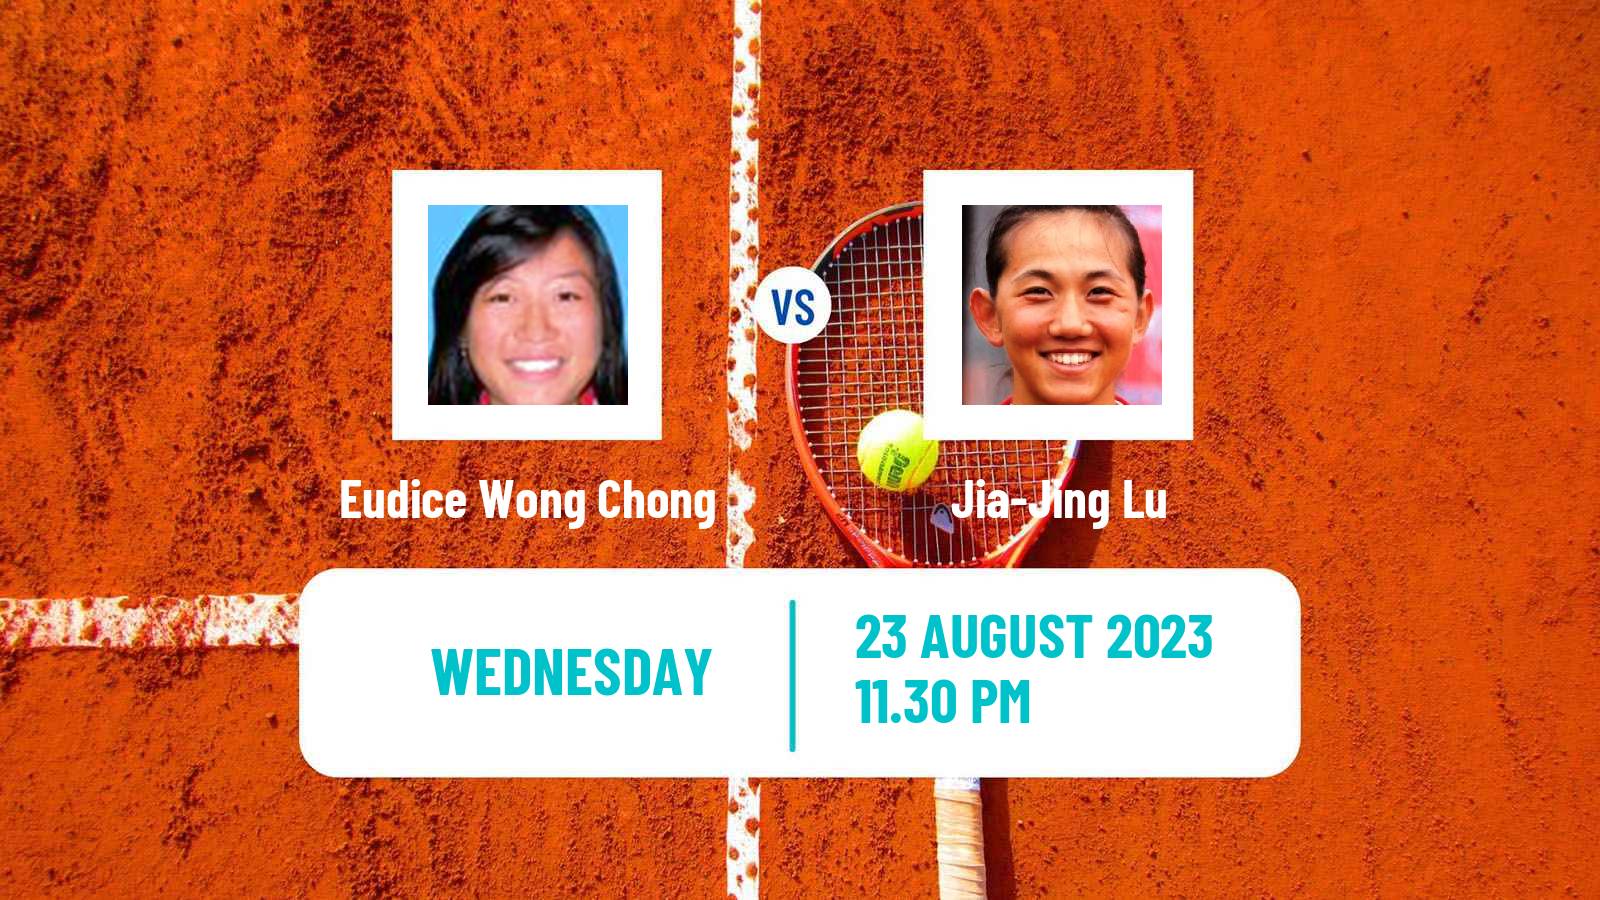 Tennis ITF W40 Hong Kong 2 Women Eudice Wong Chong - Jia-Jing Lu